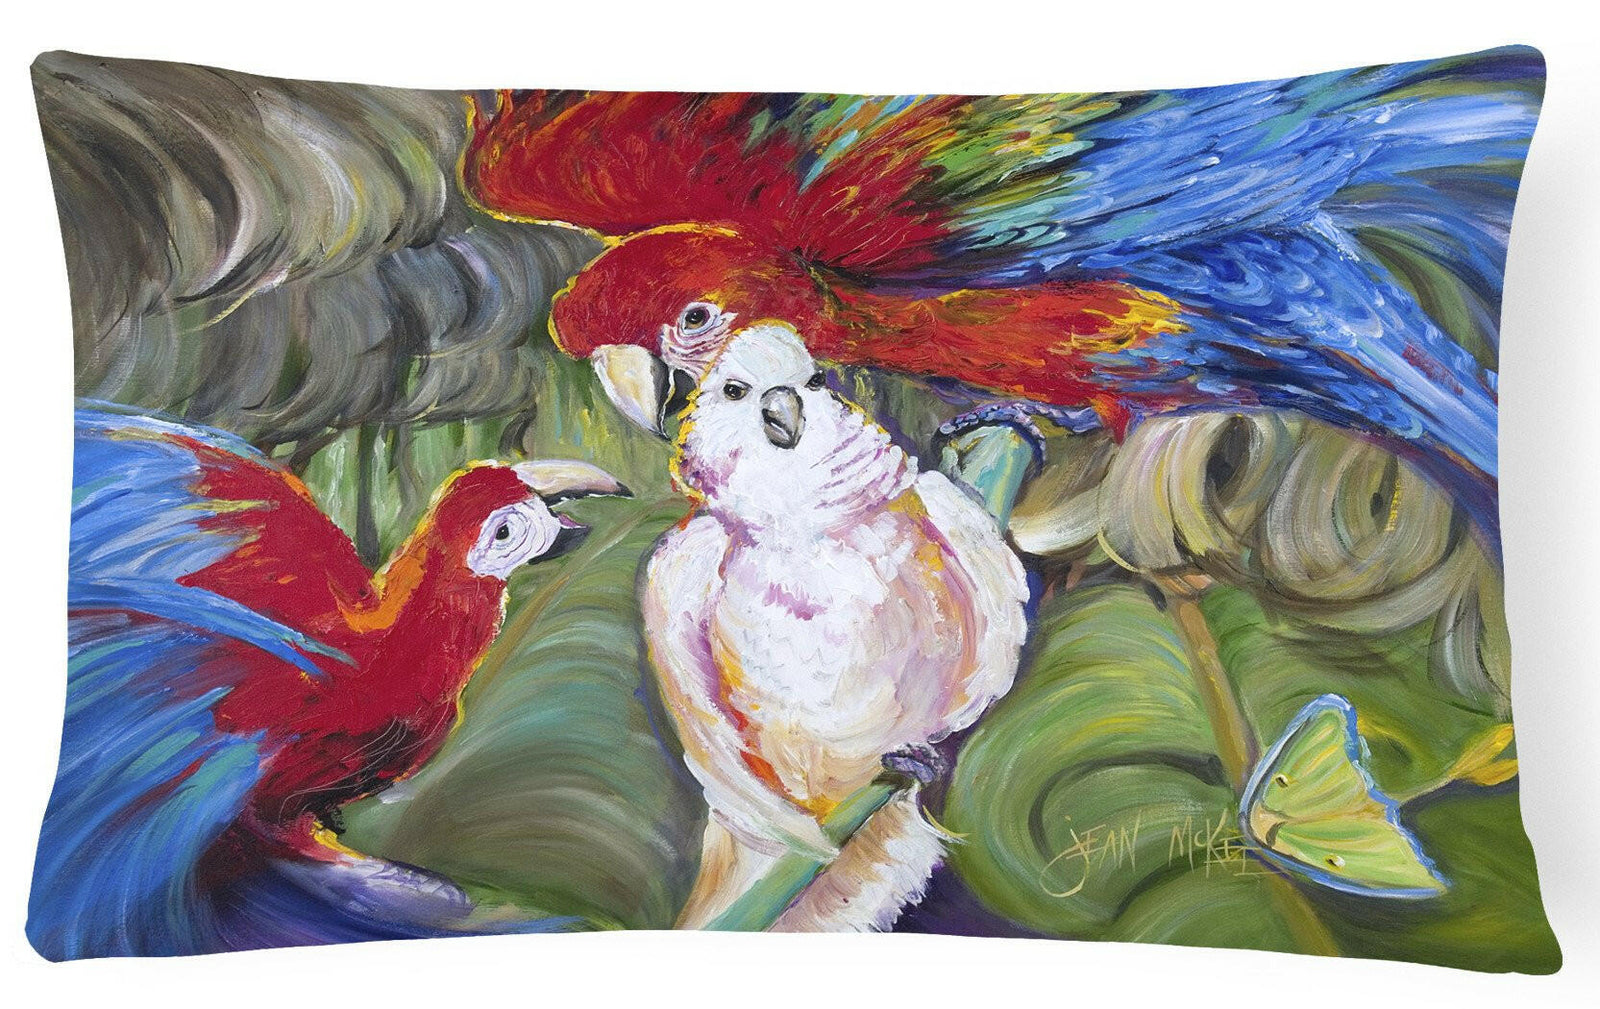 Menage-a-trois Parrots Canvas Fabric Decorative Pillow JMK1018PW1216 by Caroline's Treasures